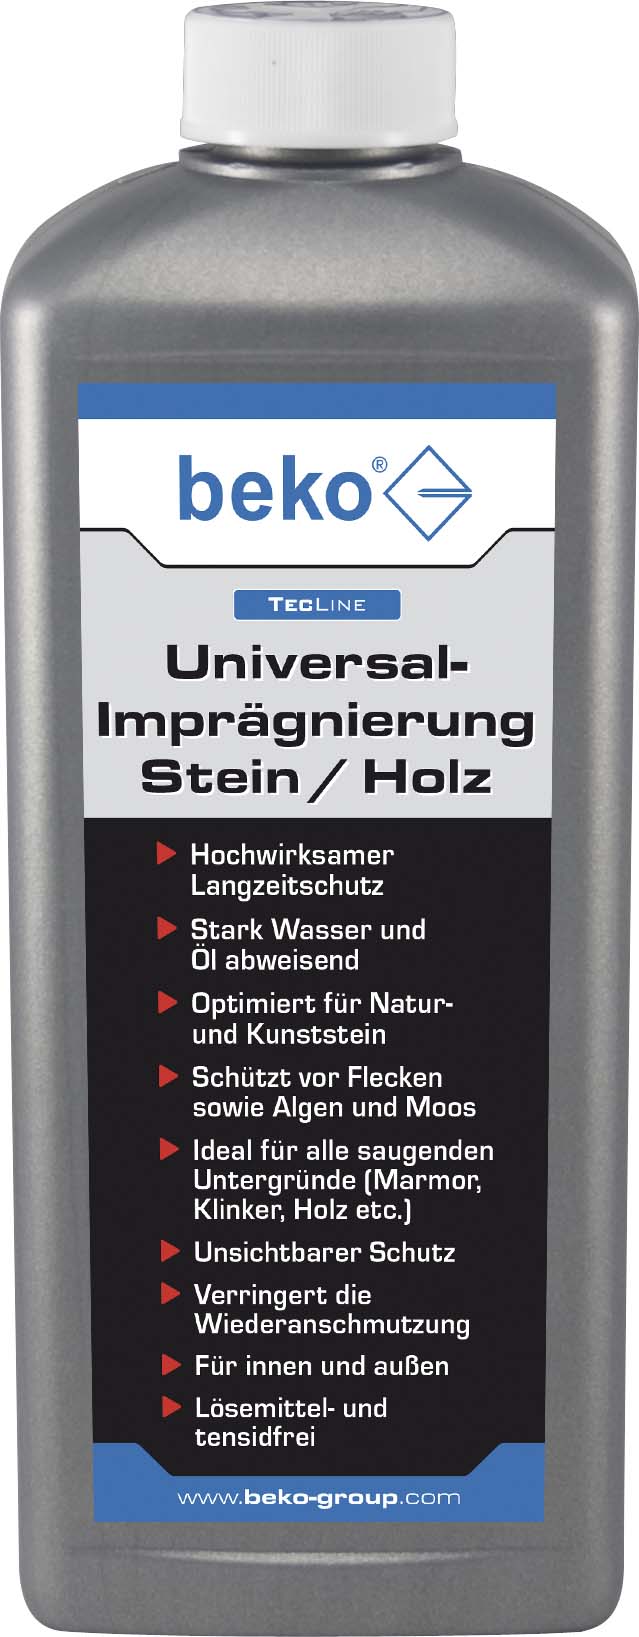 Beko TecLine Uni.-Imprägnierung Stein/Holz, 1000ml 299 11 1000 - 299111000